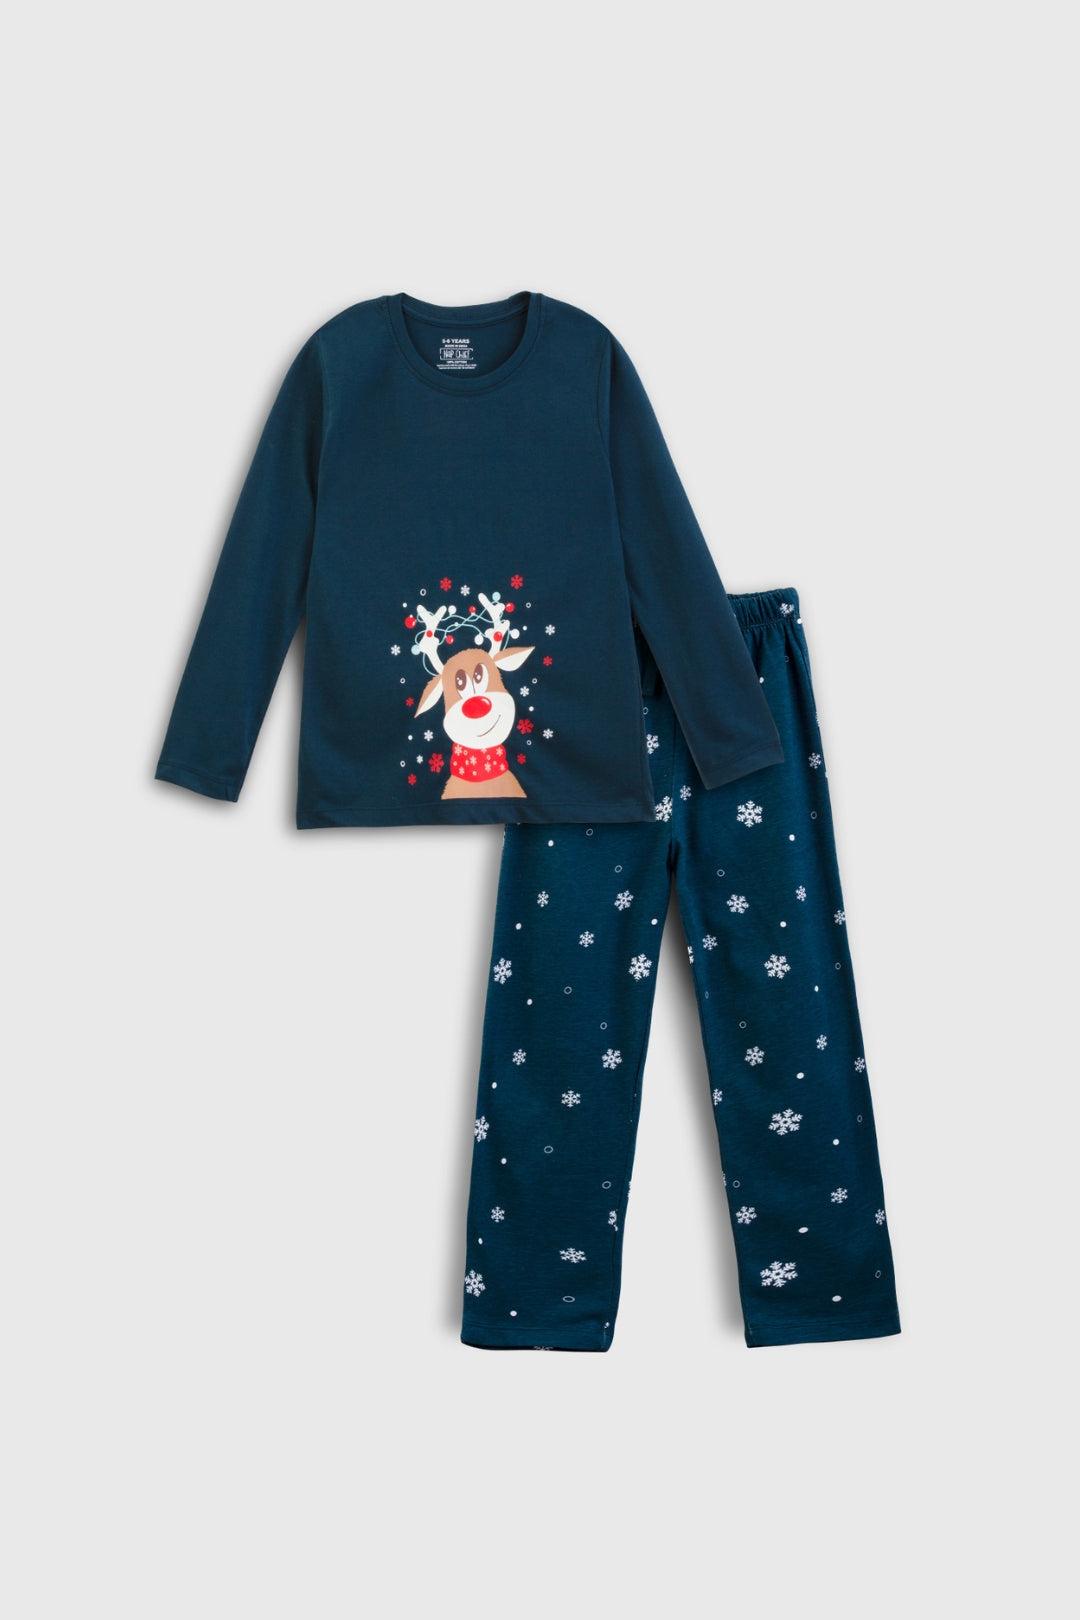 Rudolph Pajama Set